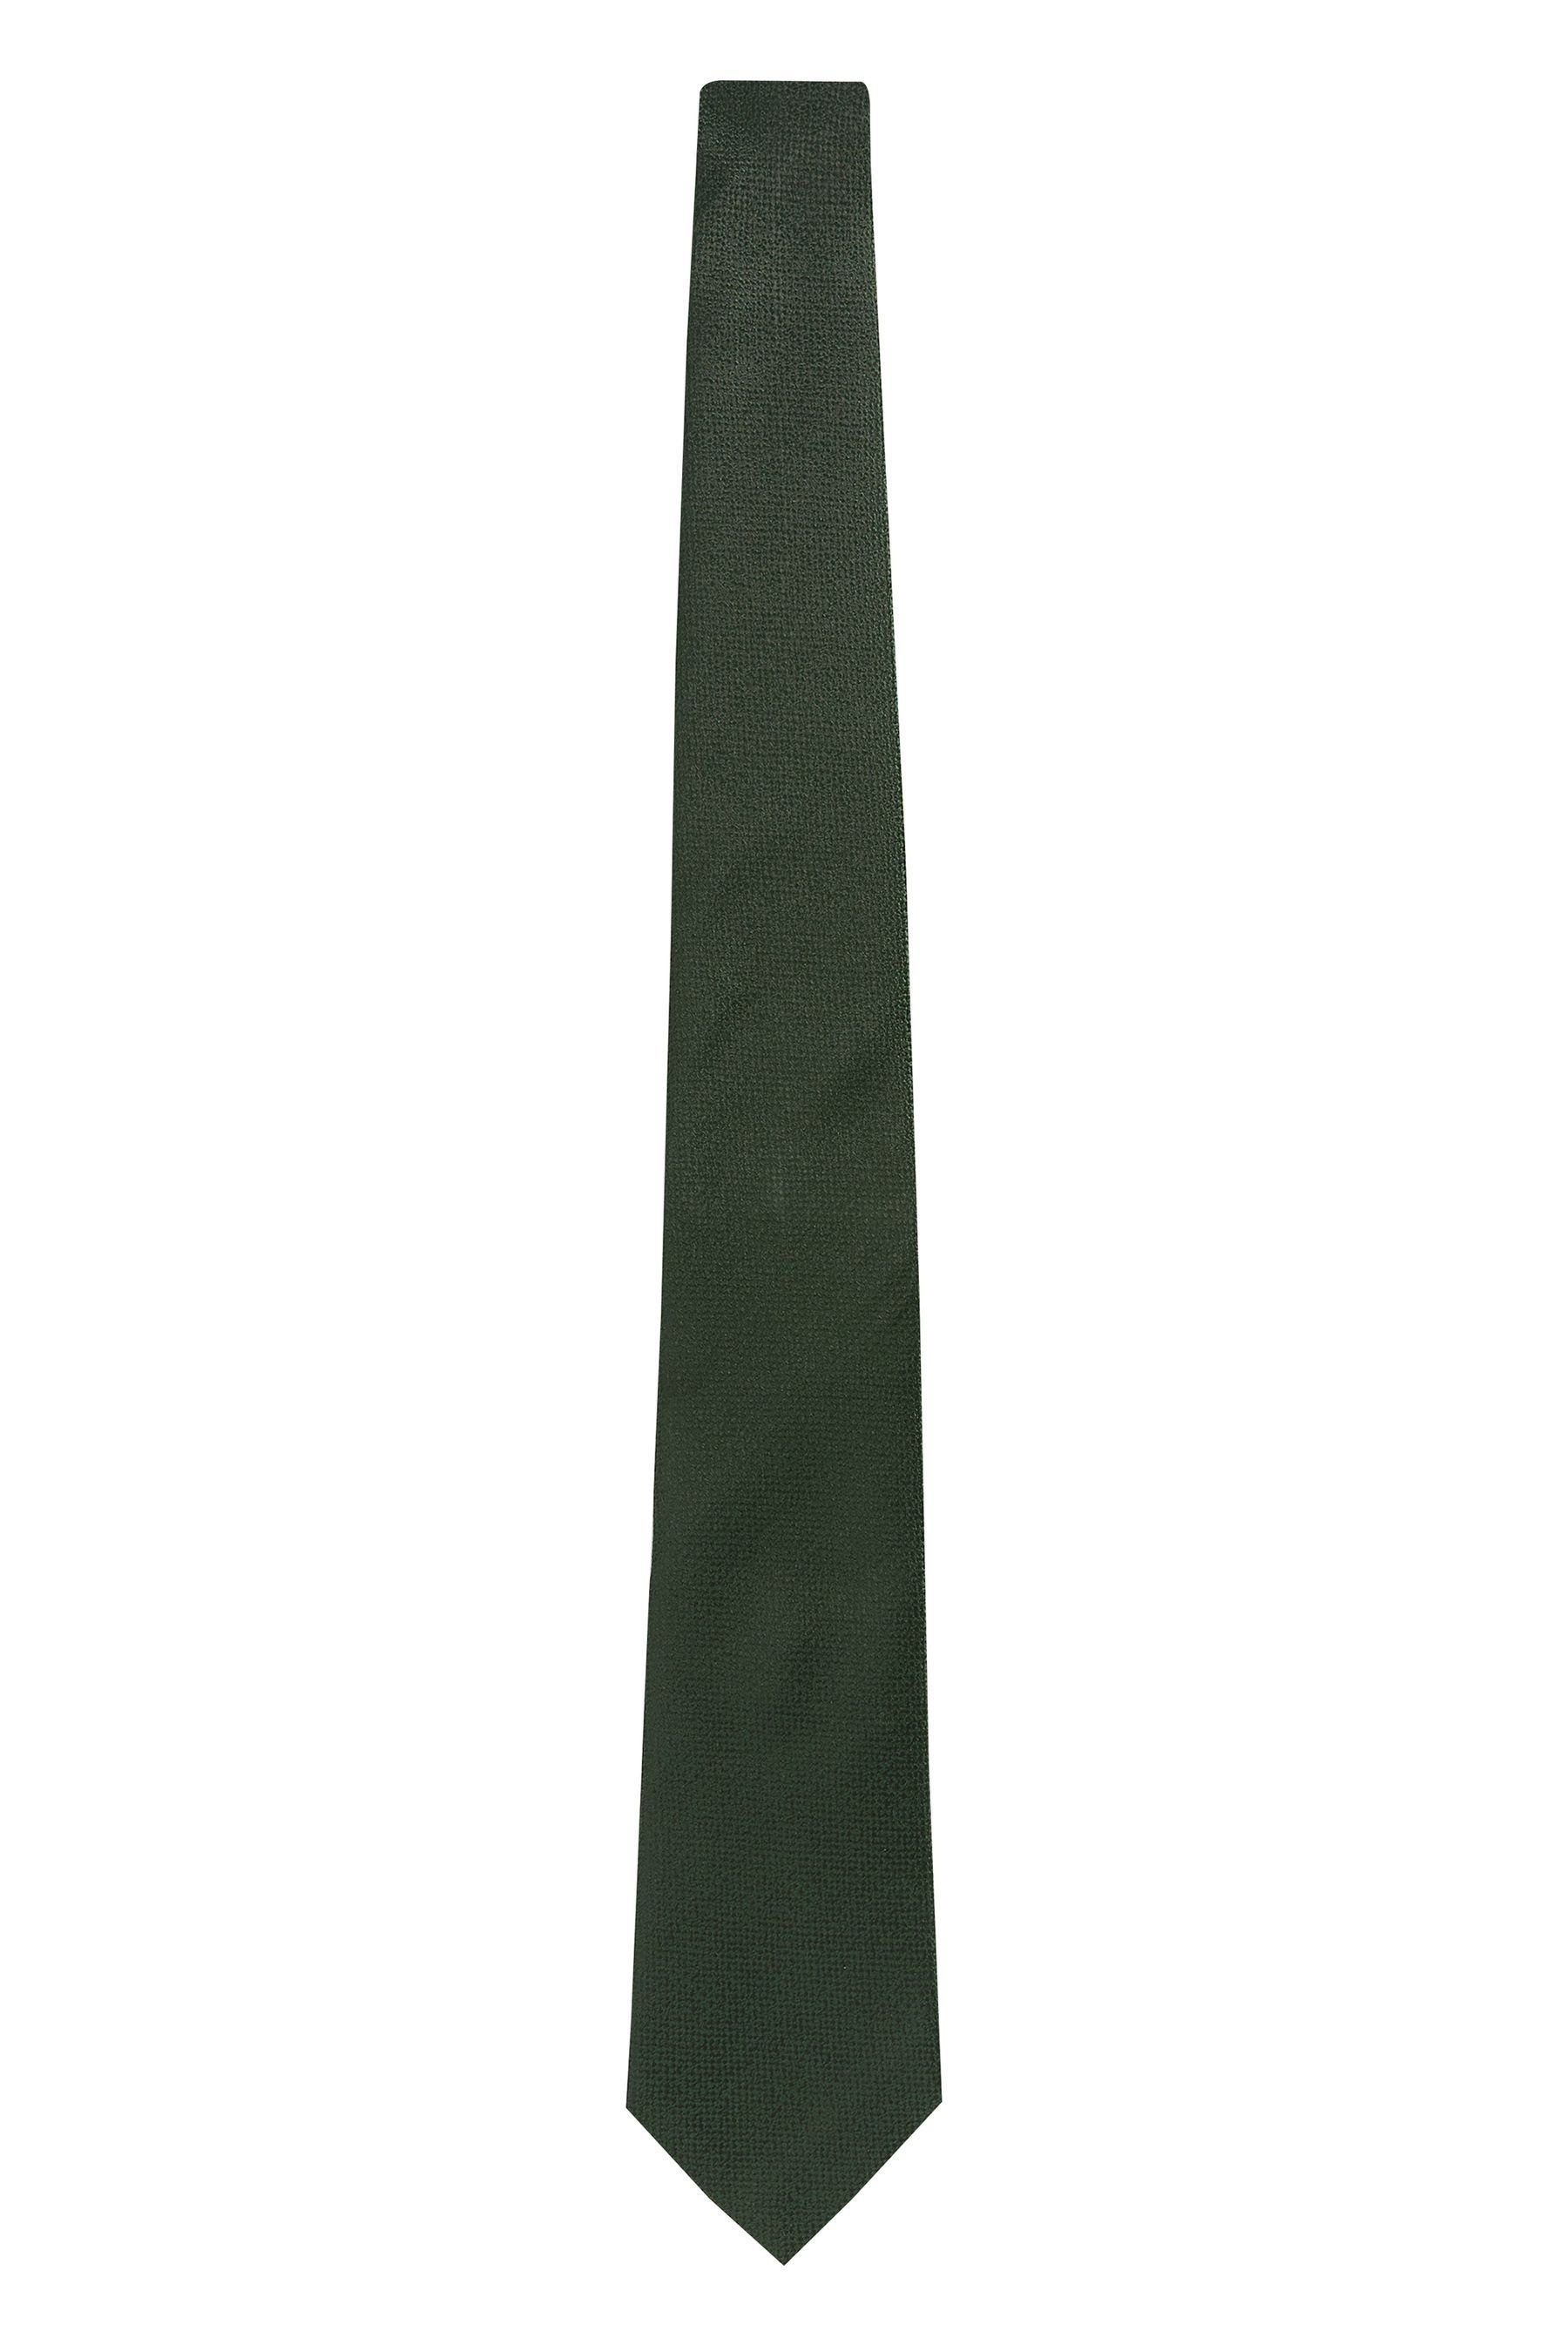 Yellow Gold (1-St) Next Italien hergestellt Signature-Krawatte, Krawatte in Medallion